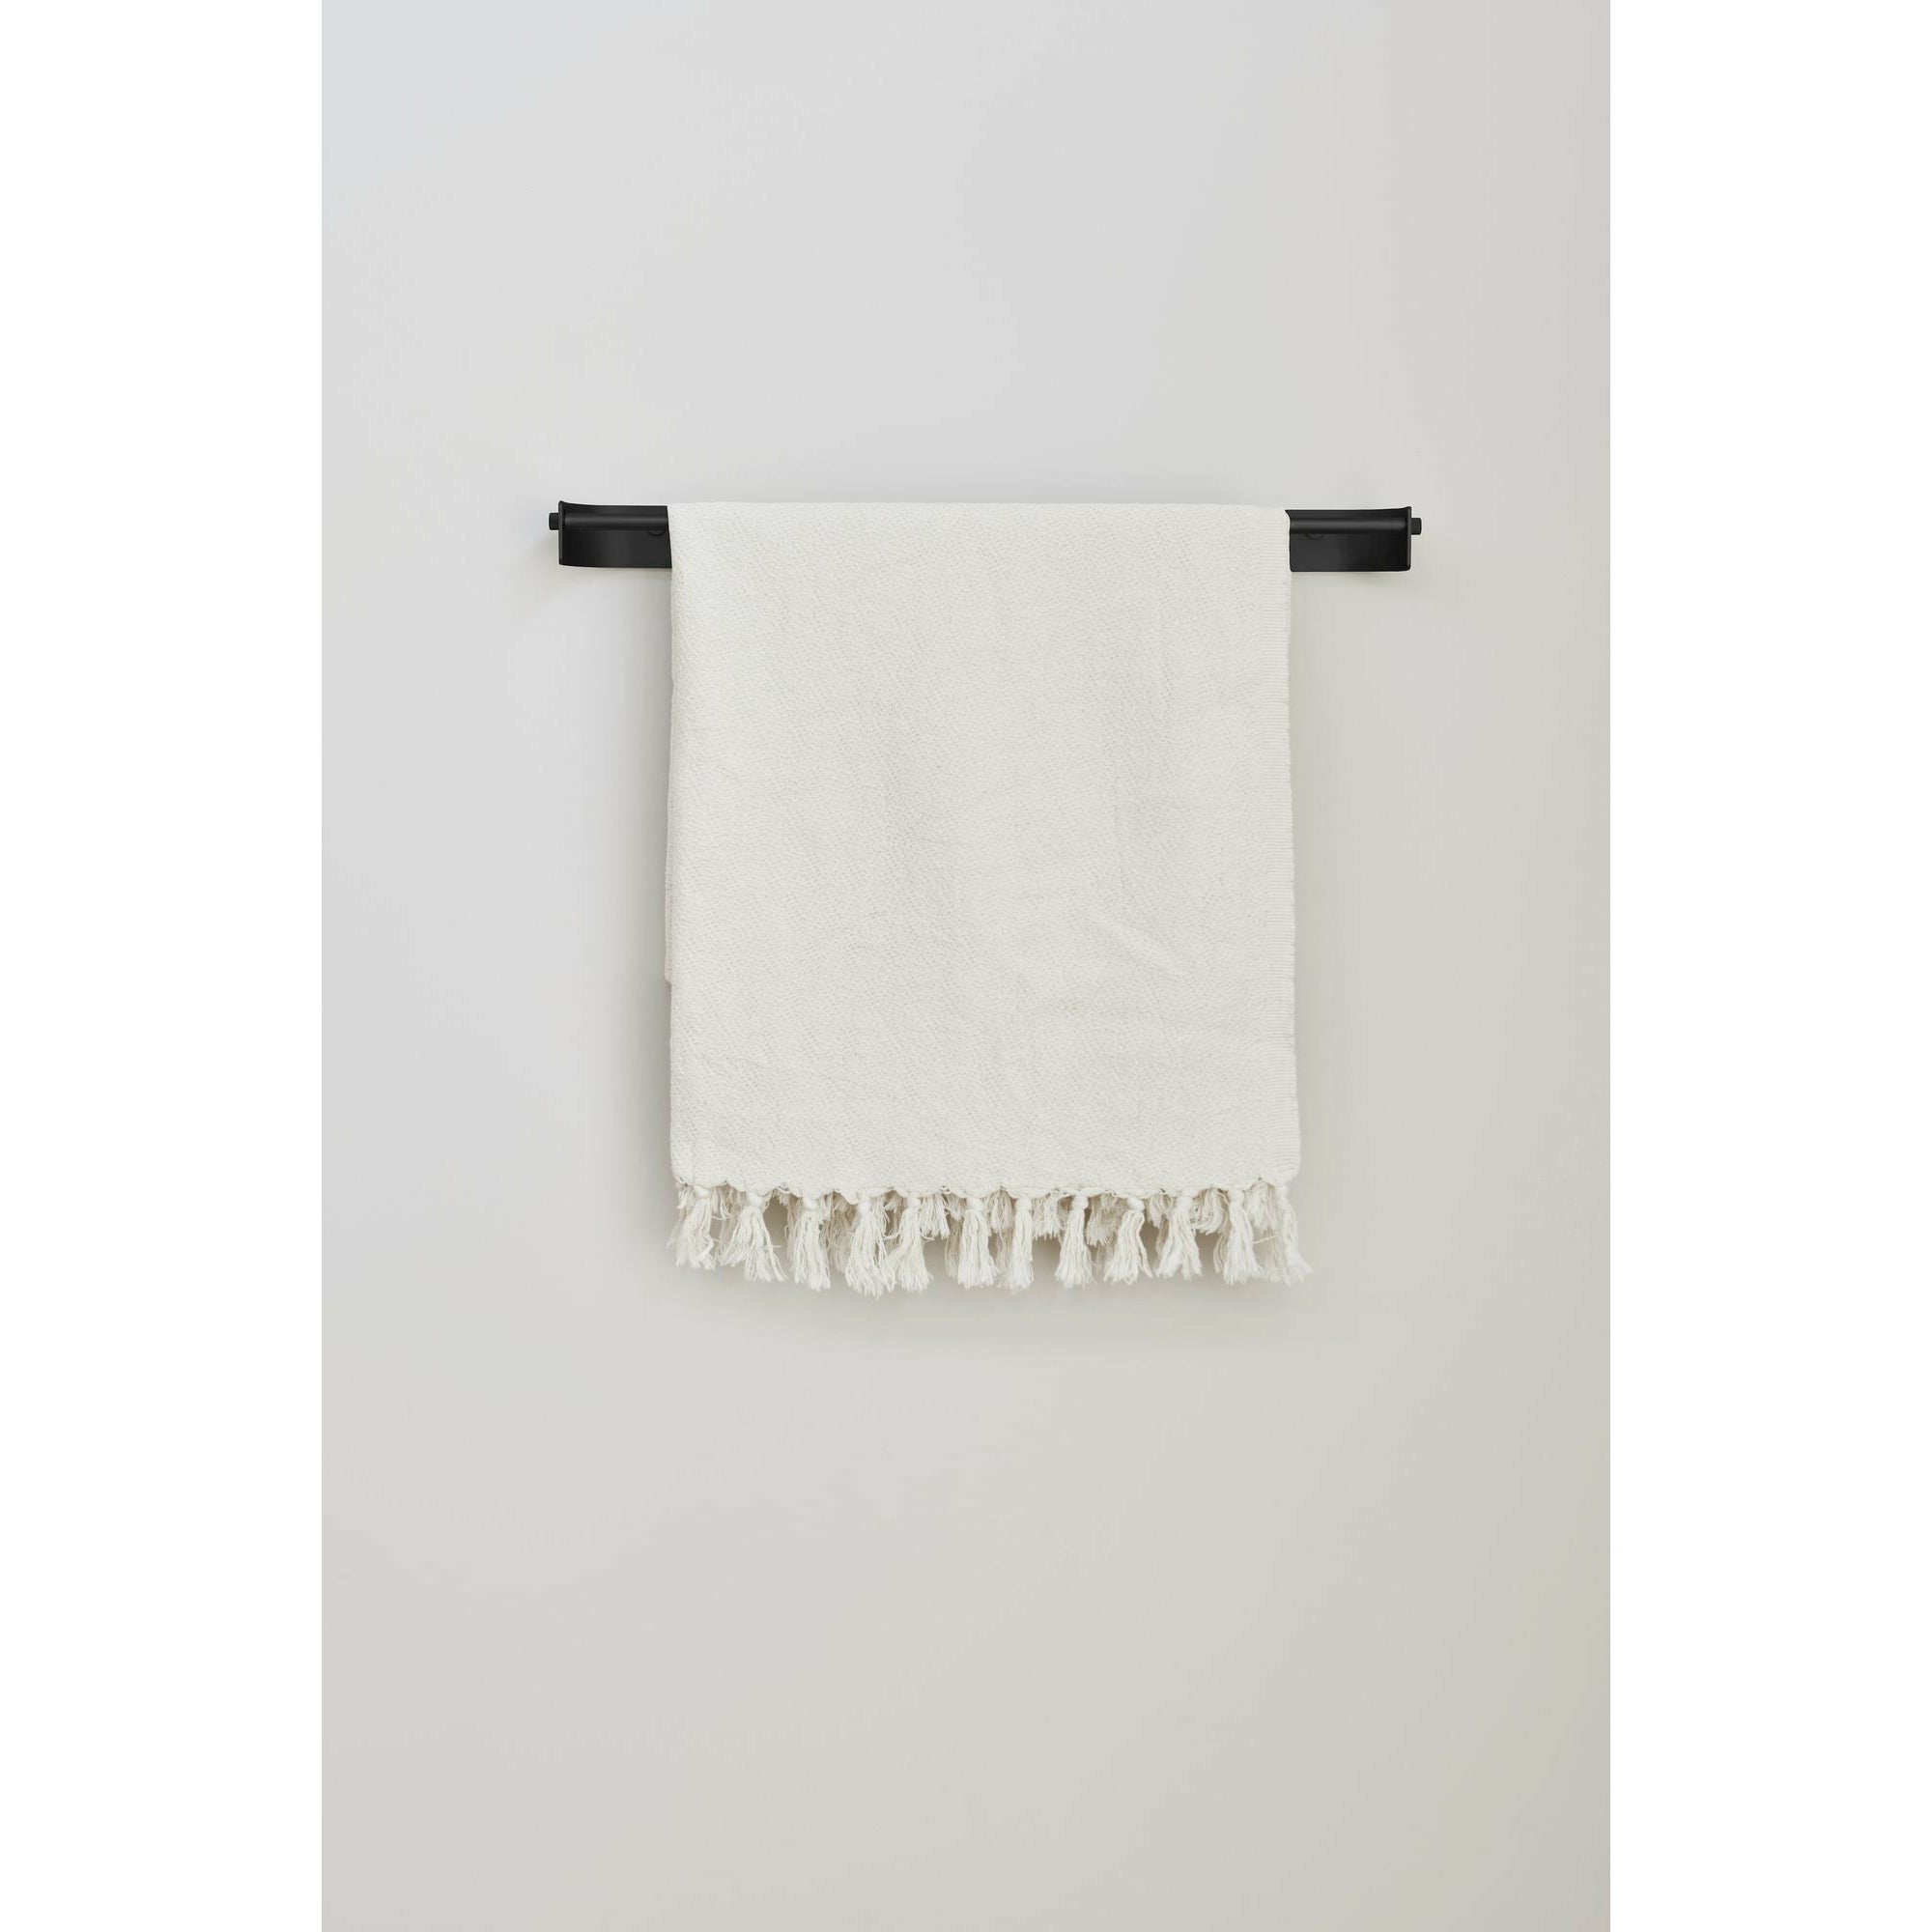 Forma e perfezionamento della barra dell'asciugamano ad arco singolo. Acciaio nero